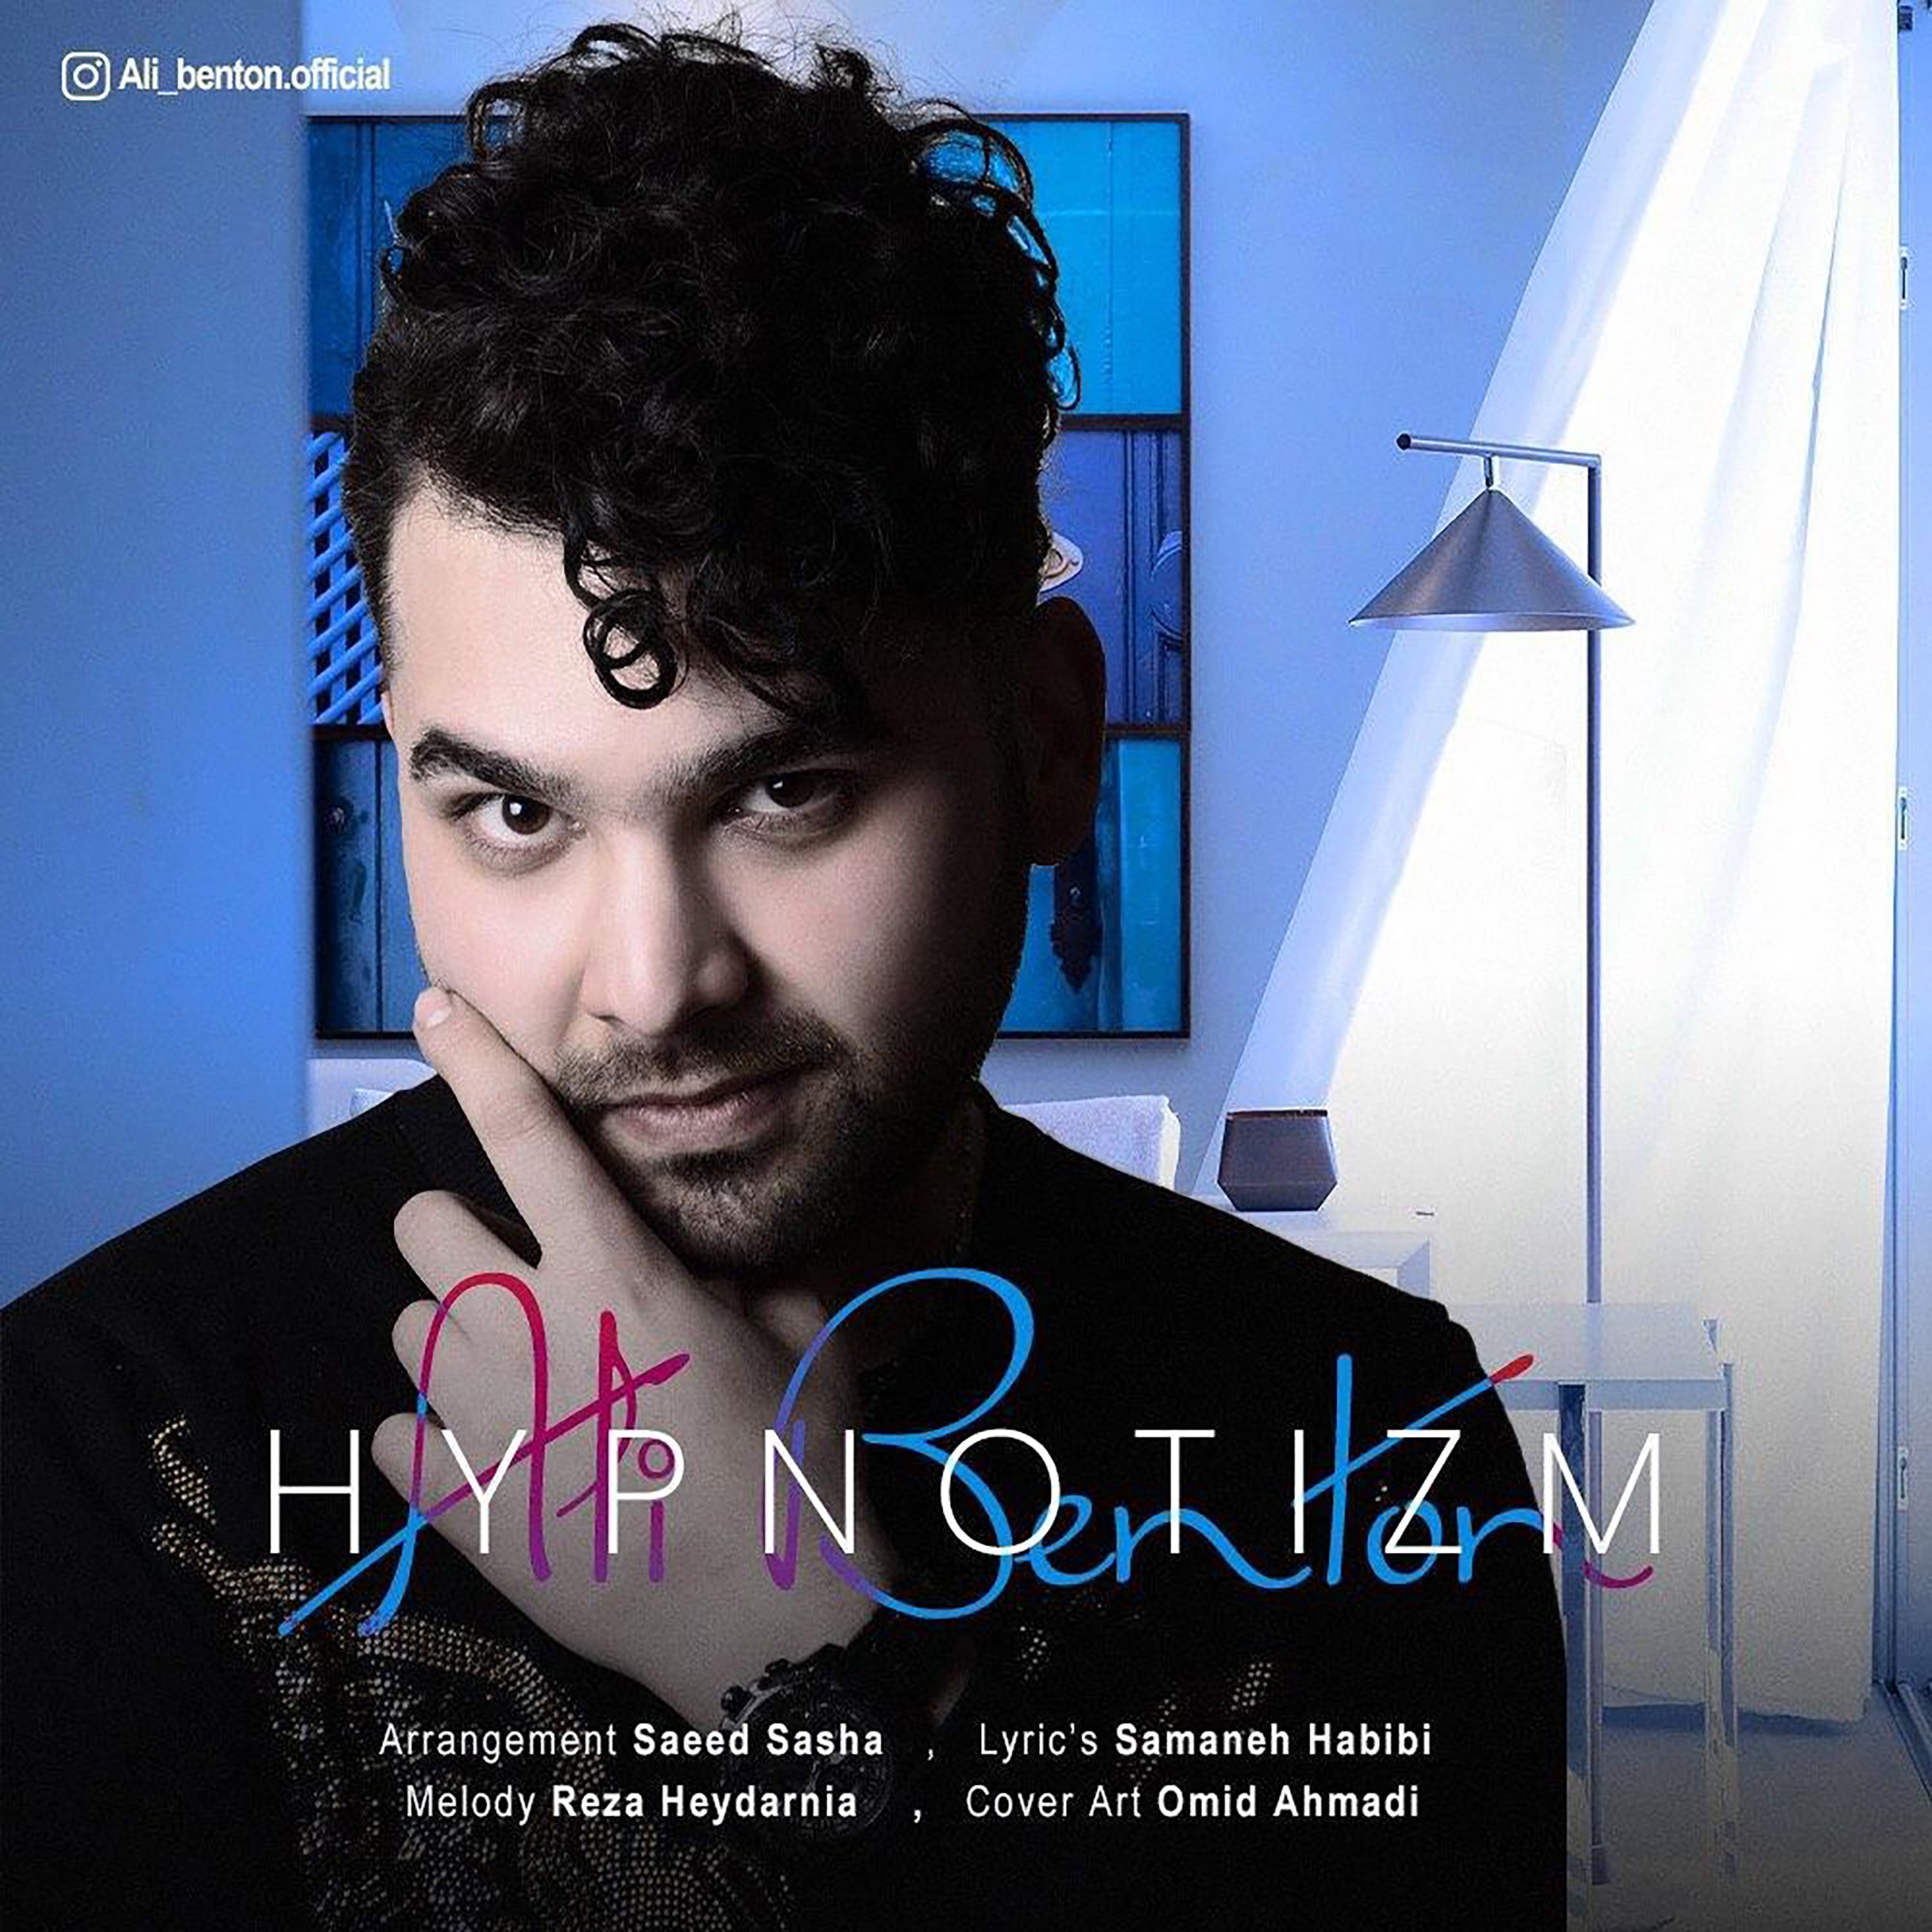  دانلود آهنگ جدید علی بنتون - هیپنوتیزم | Download New Music By Ali Benton - Hypnotizm